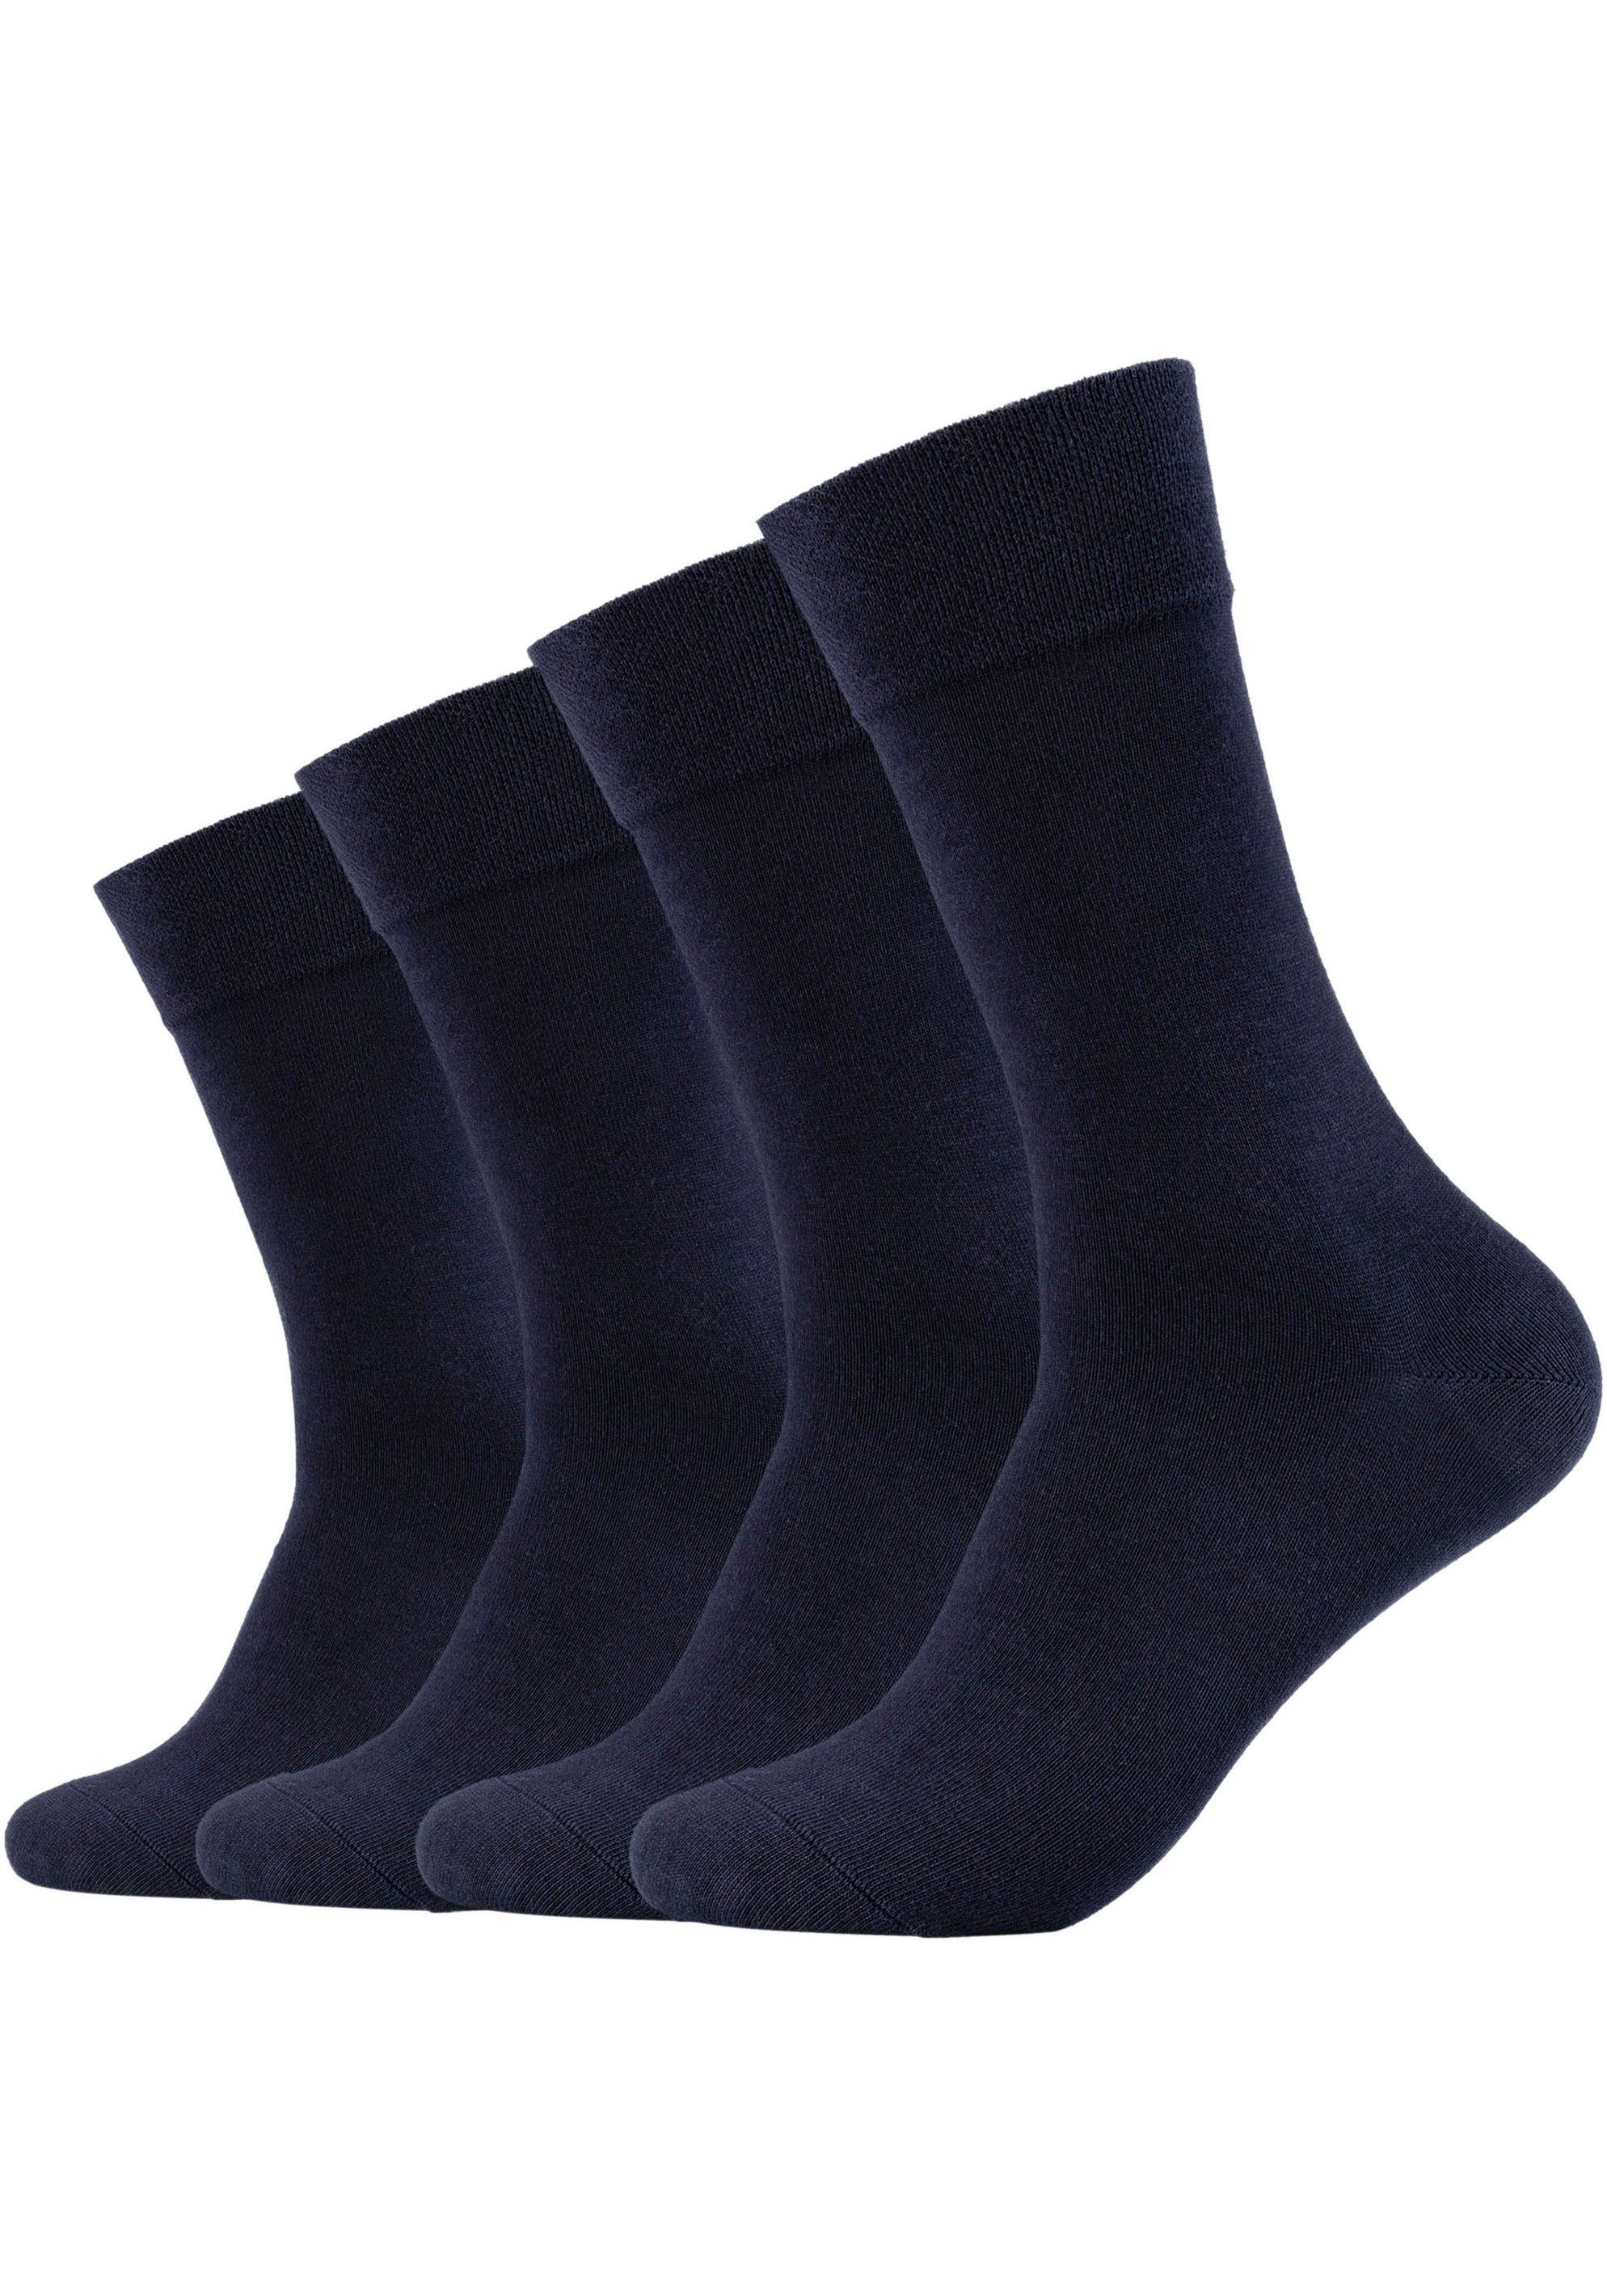 Camano Socken (Packung, 4-Paar) Atmungsaktiv: 97% Bio-Baumwolle navy | Lange Socken